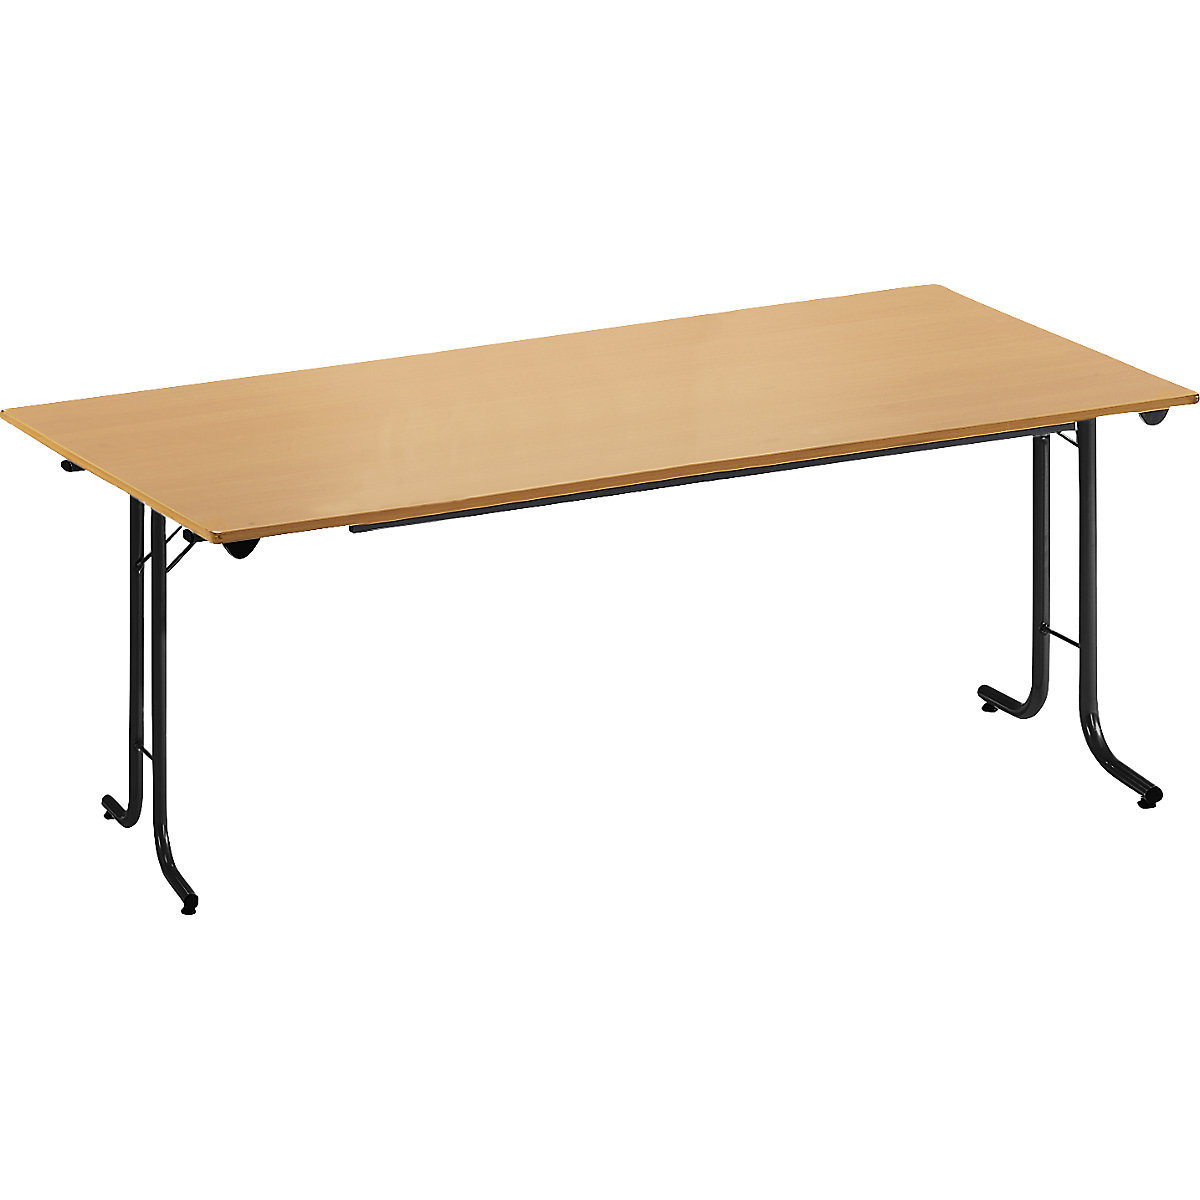 Sklápací stôl, so zaoblenými hranami, podstavec z kruhovej rúrky, tvar dosky obdĺžnikový, 1600 x 700 mm, podstavec čierna, doska vzor buk-16